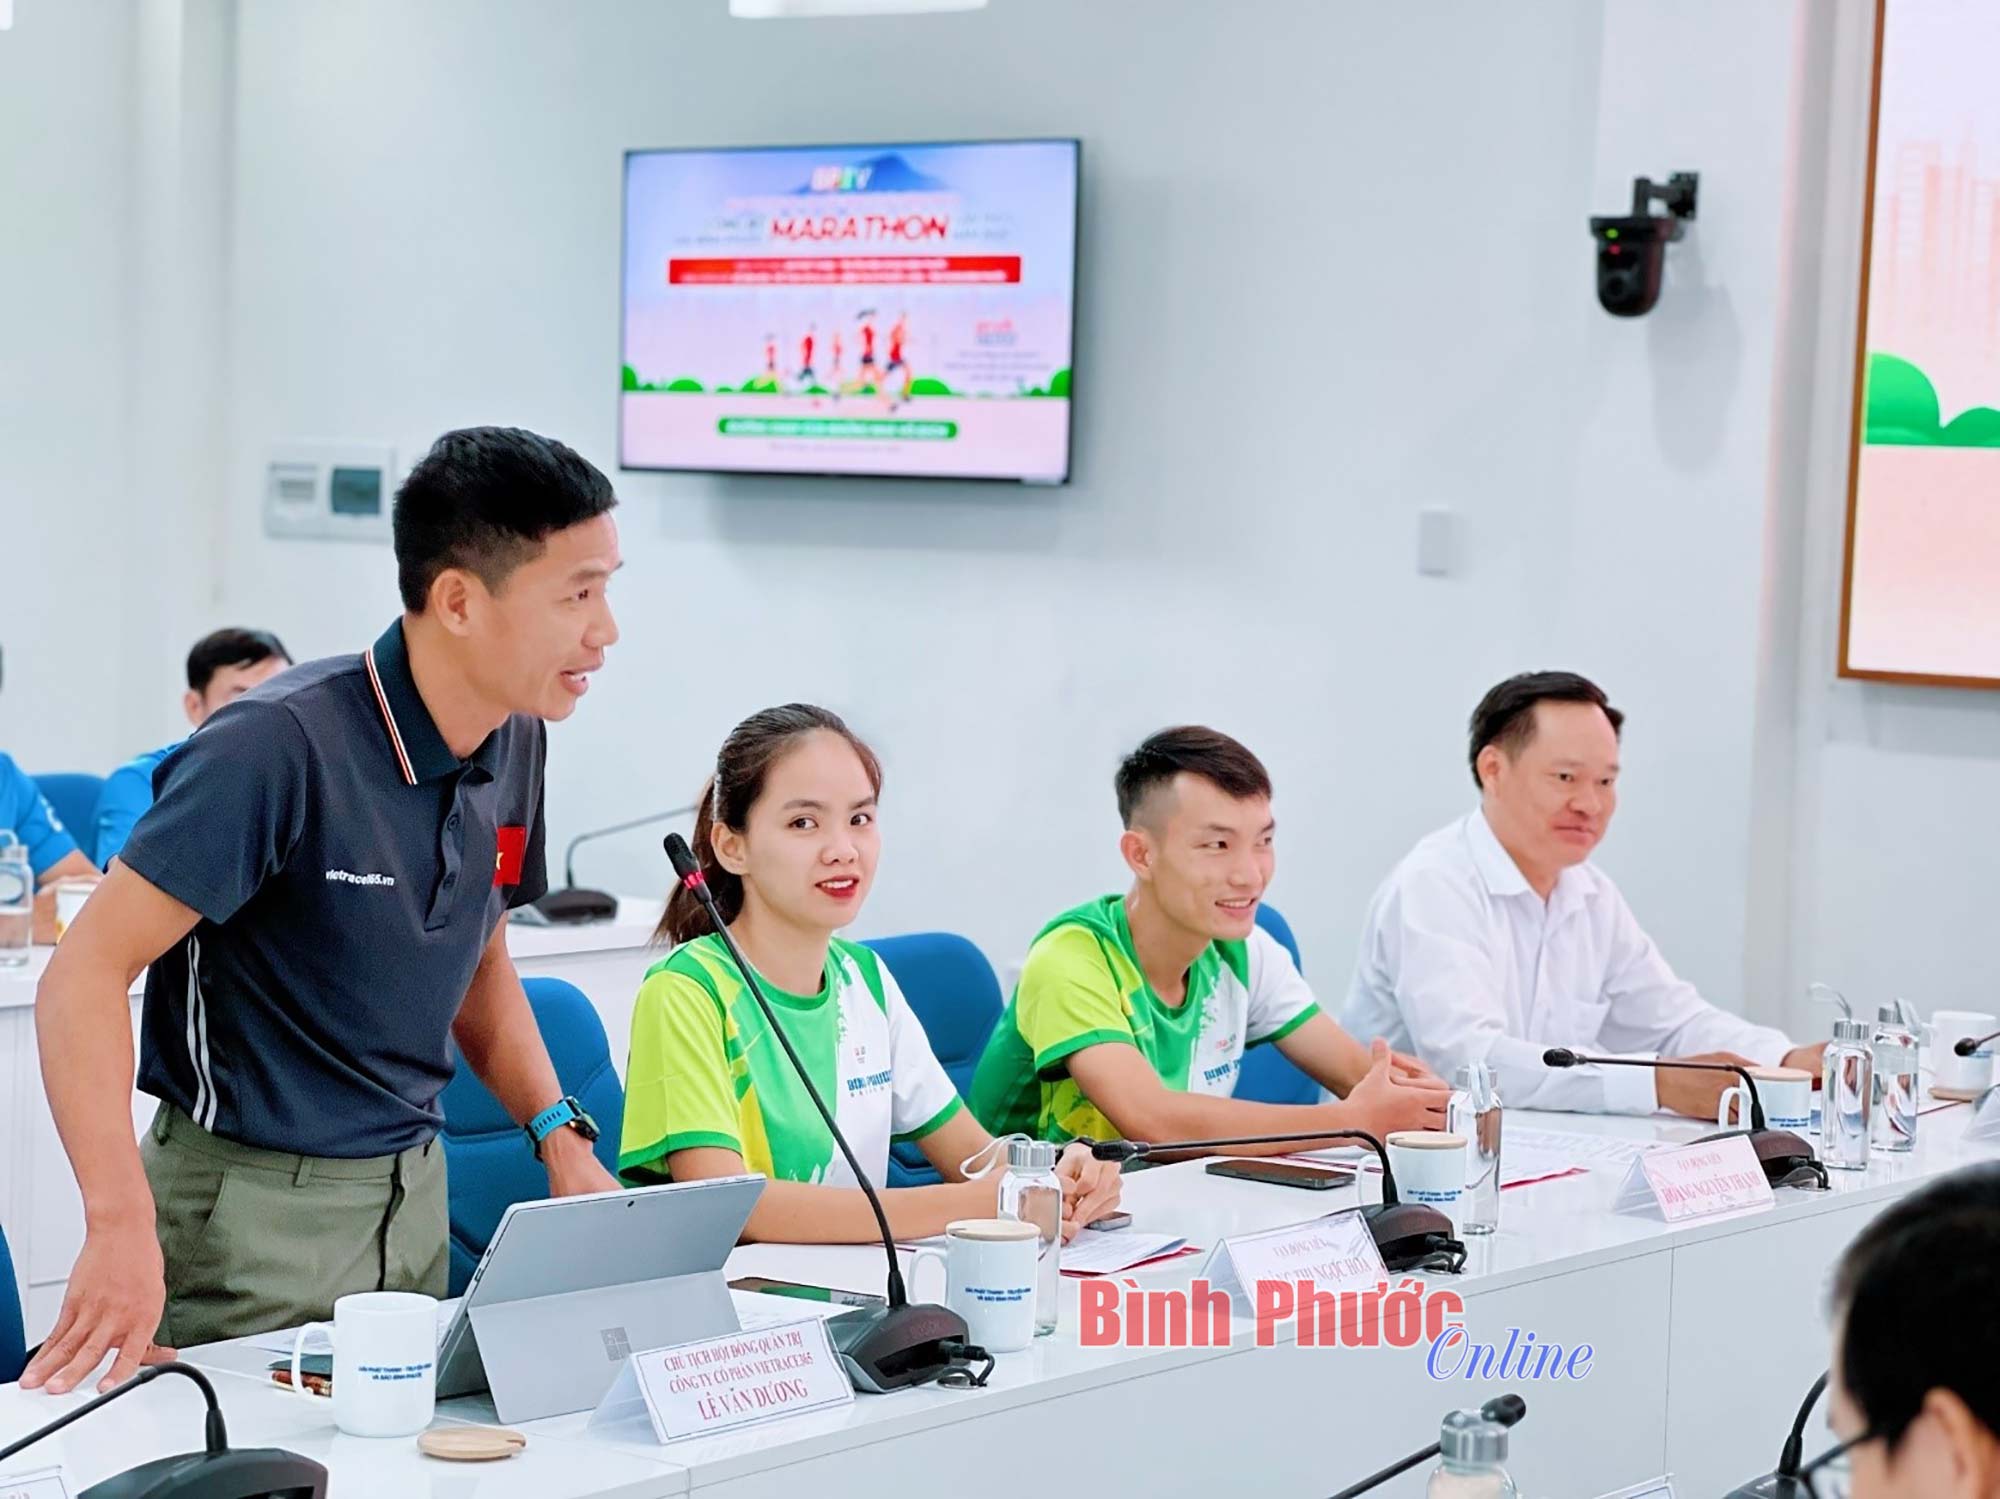 BPTV công bố giải Bình Phước marathon lần thứ I, năm 2023